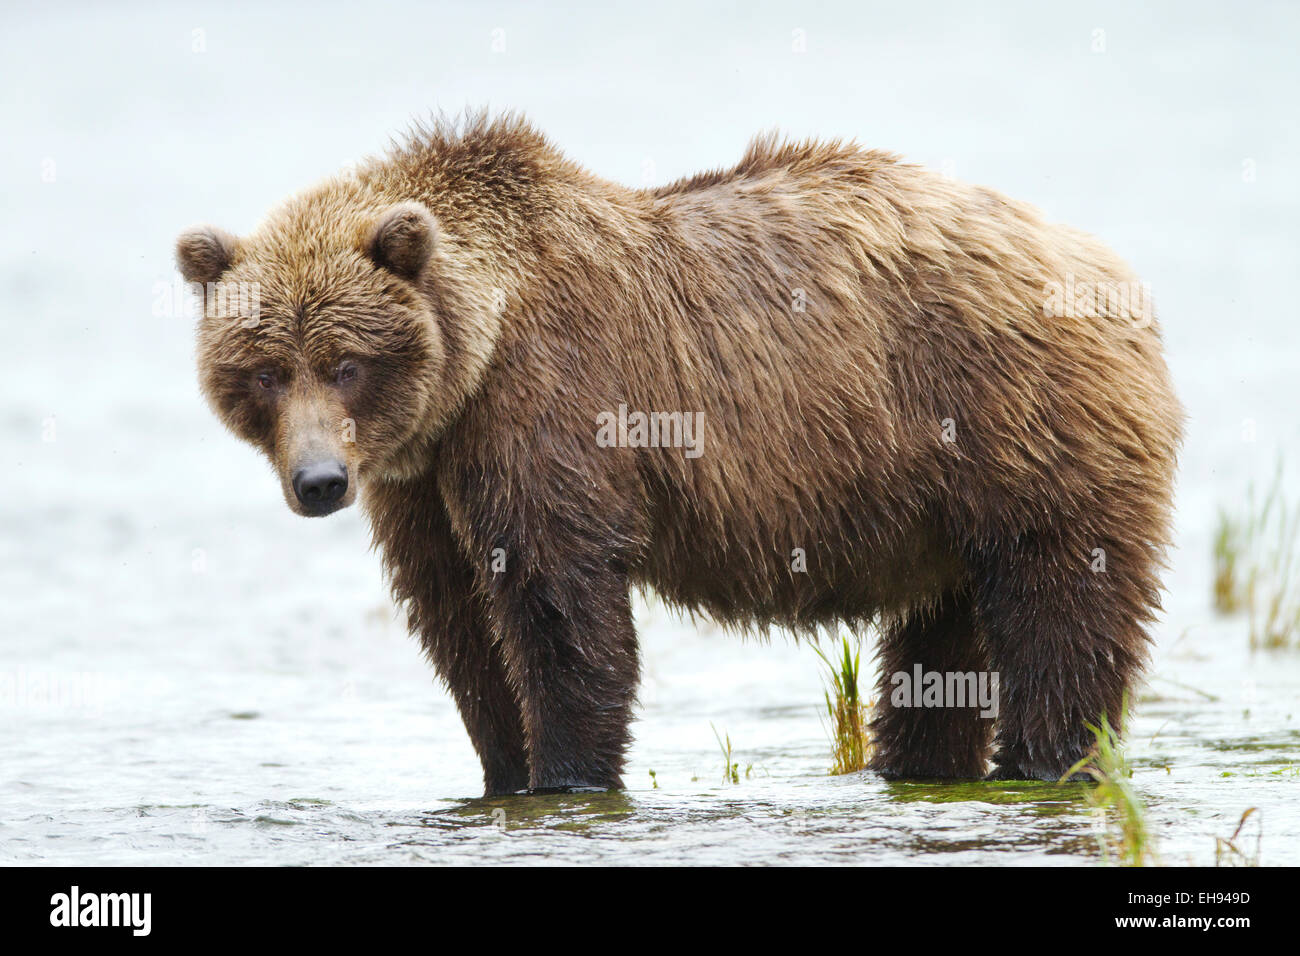 Coastal brown bear (Ursus arctos) in Katmai National Park, Alaska Stock Photo